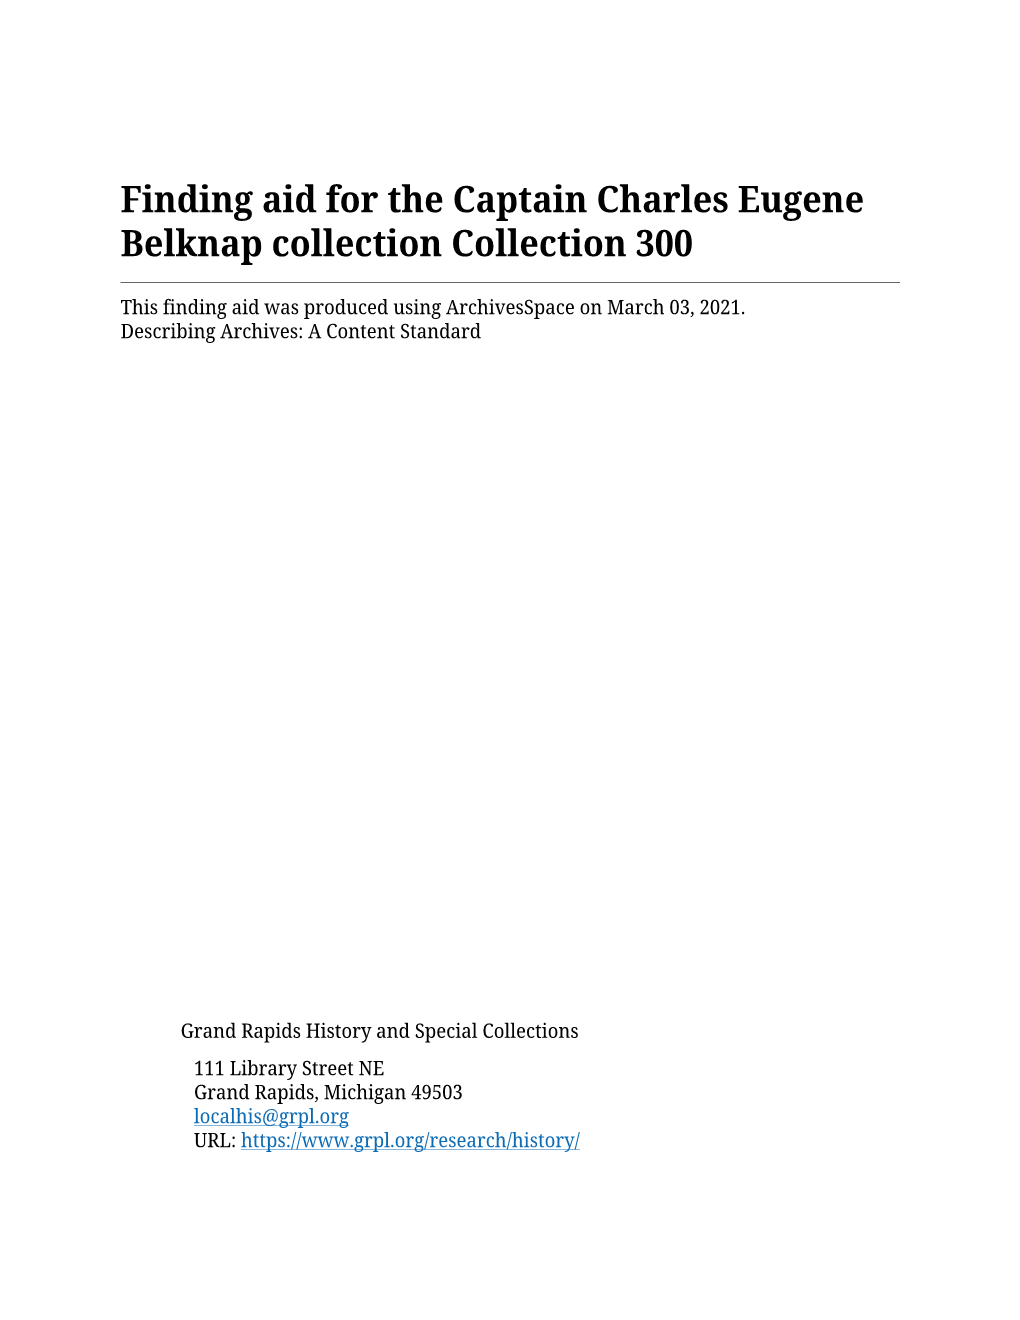 Capt. Charles Eugene Belknap Collection